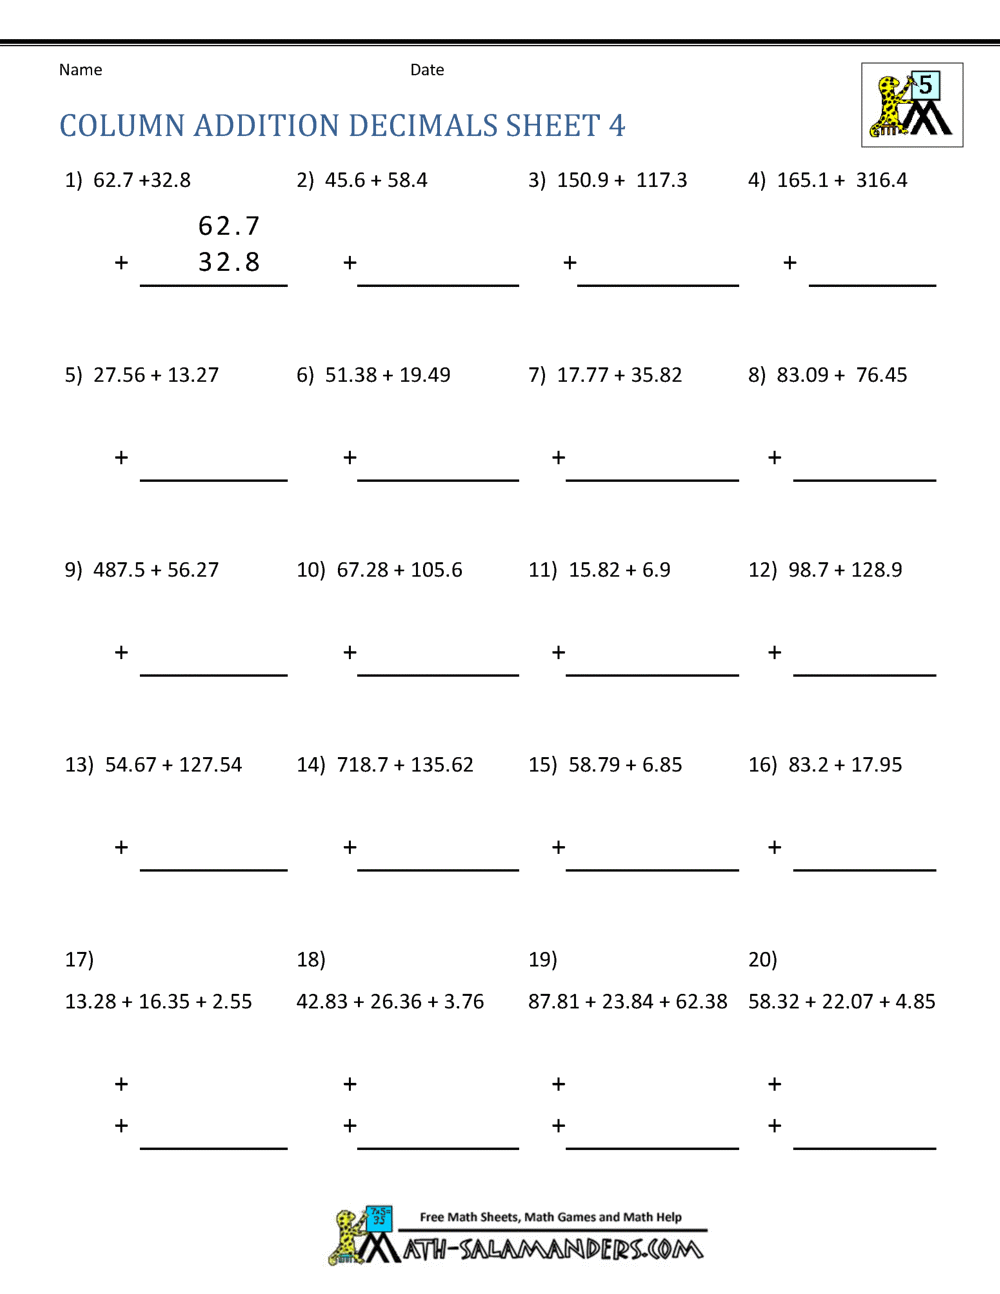 decimals-multiplication-worksheets-multiplying-decimals-by-10-g-worksheet-for-5th-grade